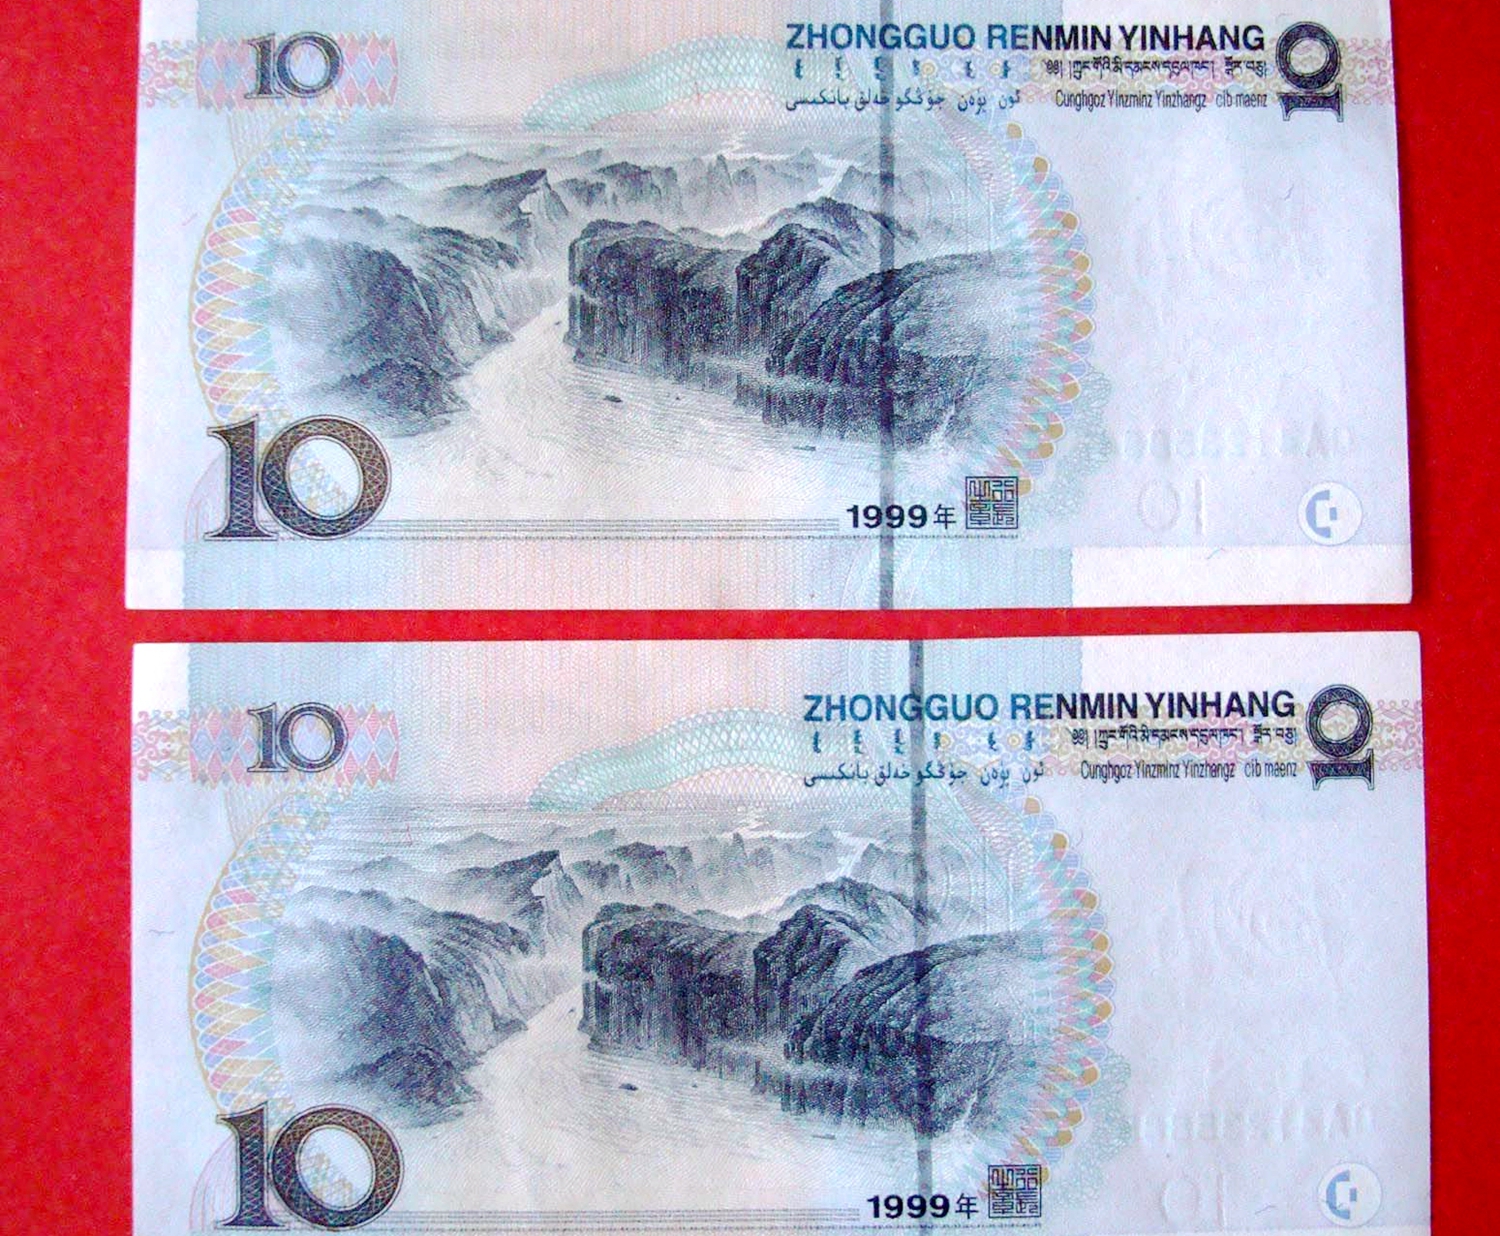 提个醒:这版本的10元人民币,上面是这两个字母,别花掉!